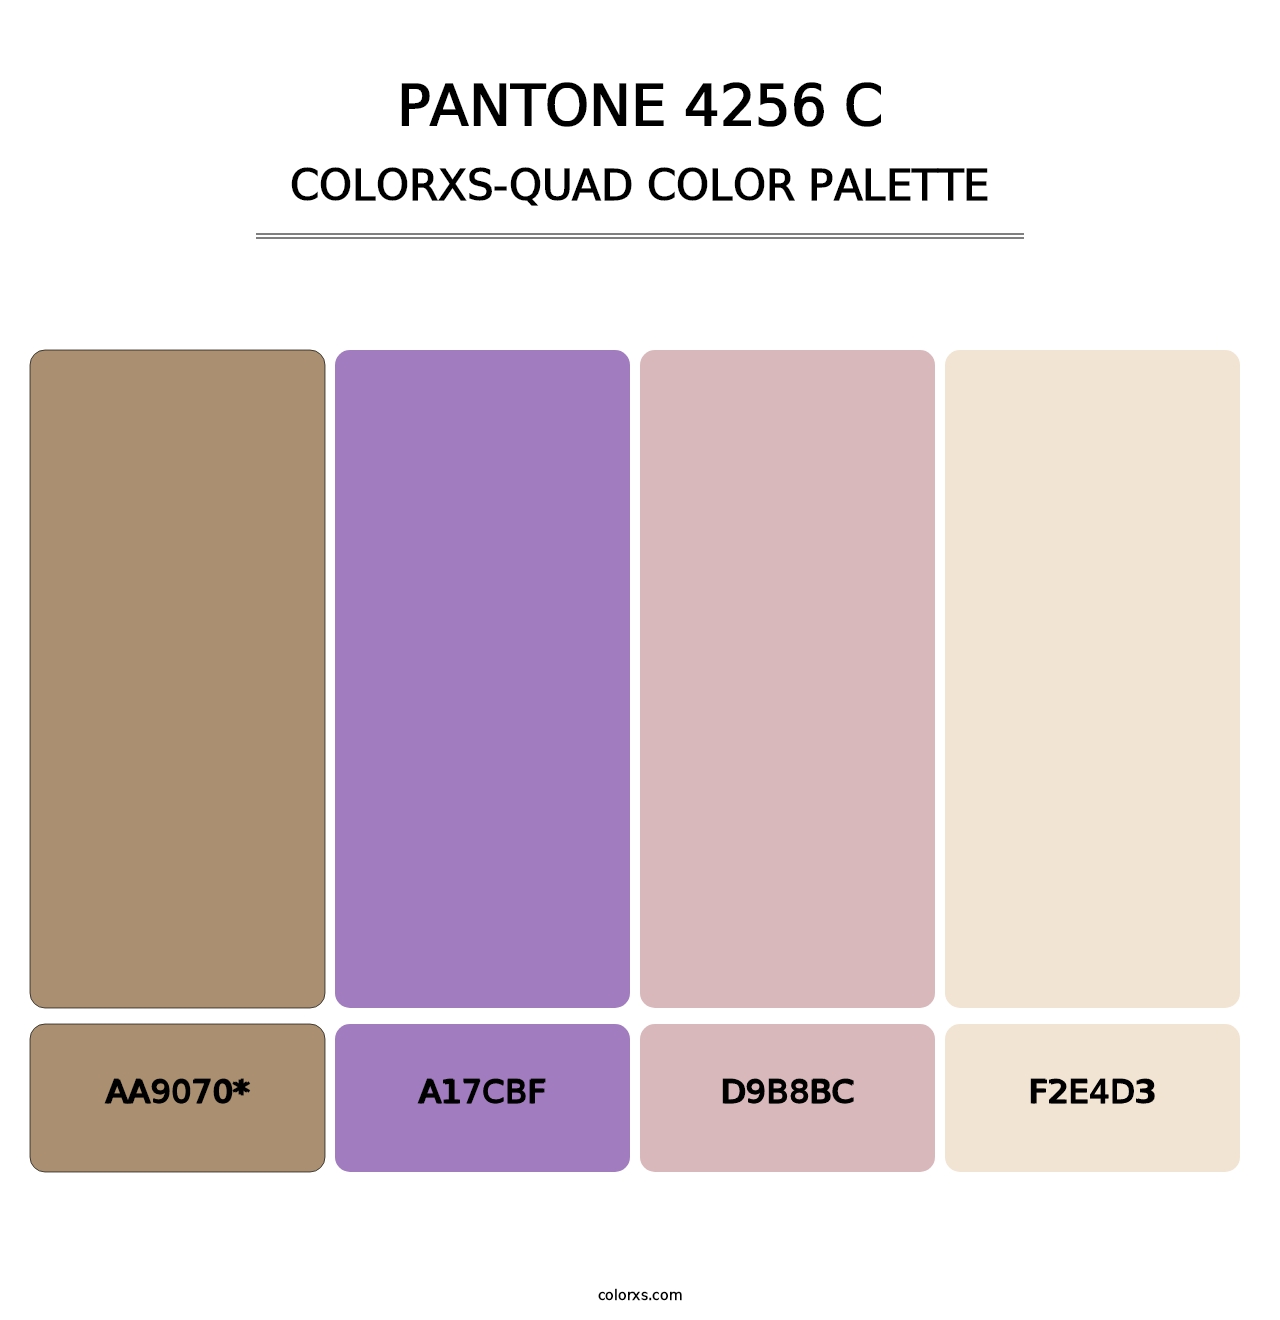 PANTONE 4256 C - Colorxs Quad Palette